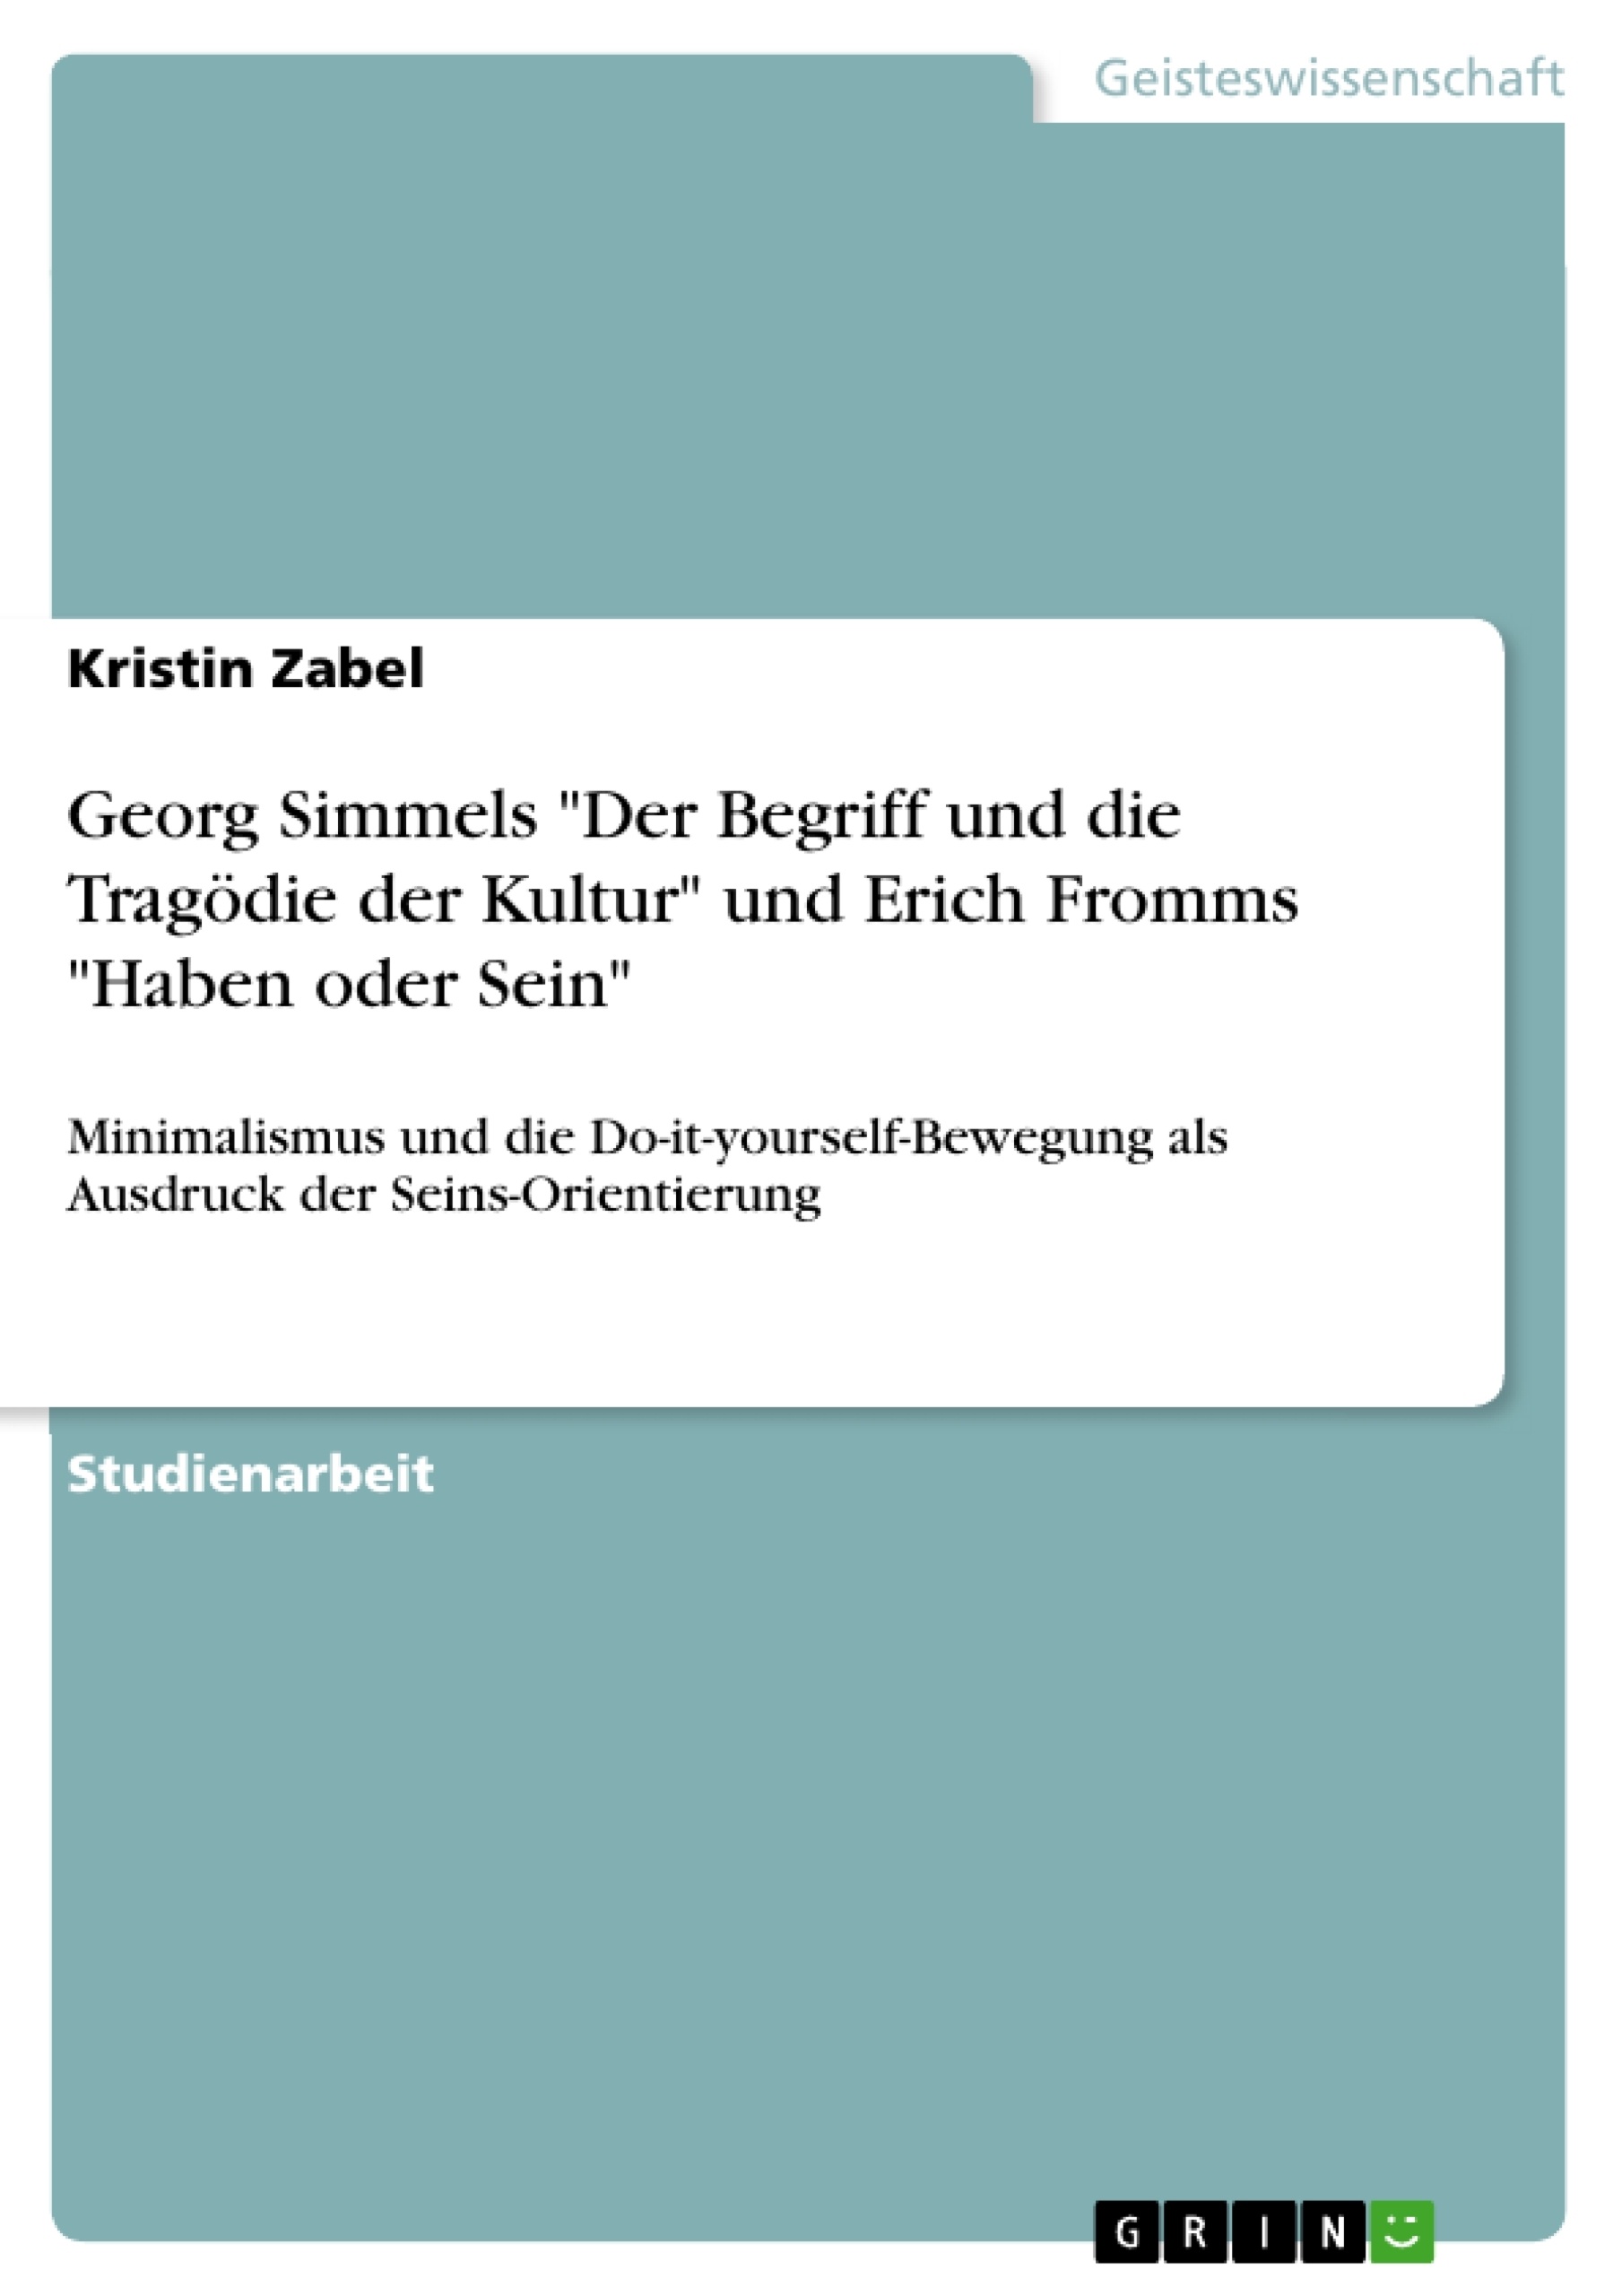 Title: Georg Simmels "Der Begriff und die Tragödie der Kultur" und Erich Fromms "Haben oder Sein"